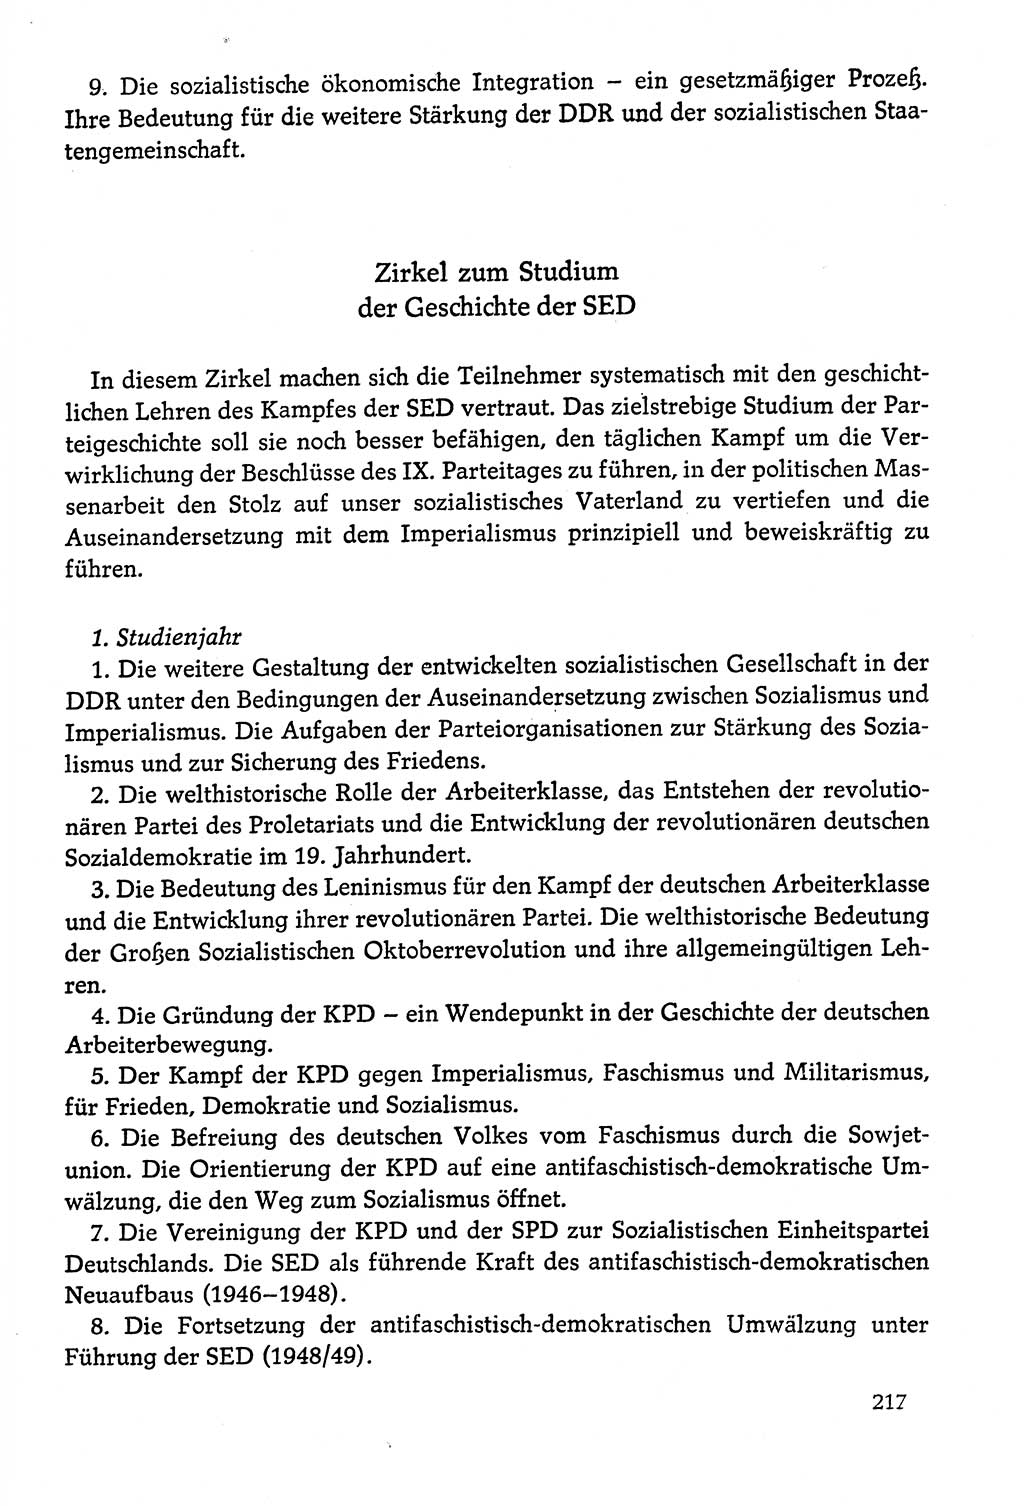 Dokumente der Sozialistischen Einheitspartei Deutschlands (SED) [Deutsche Demokratische Republik (DDR)] 1978-1979, Seite 217 (Dok. SED DDR 1978-1979, S. 217)